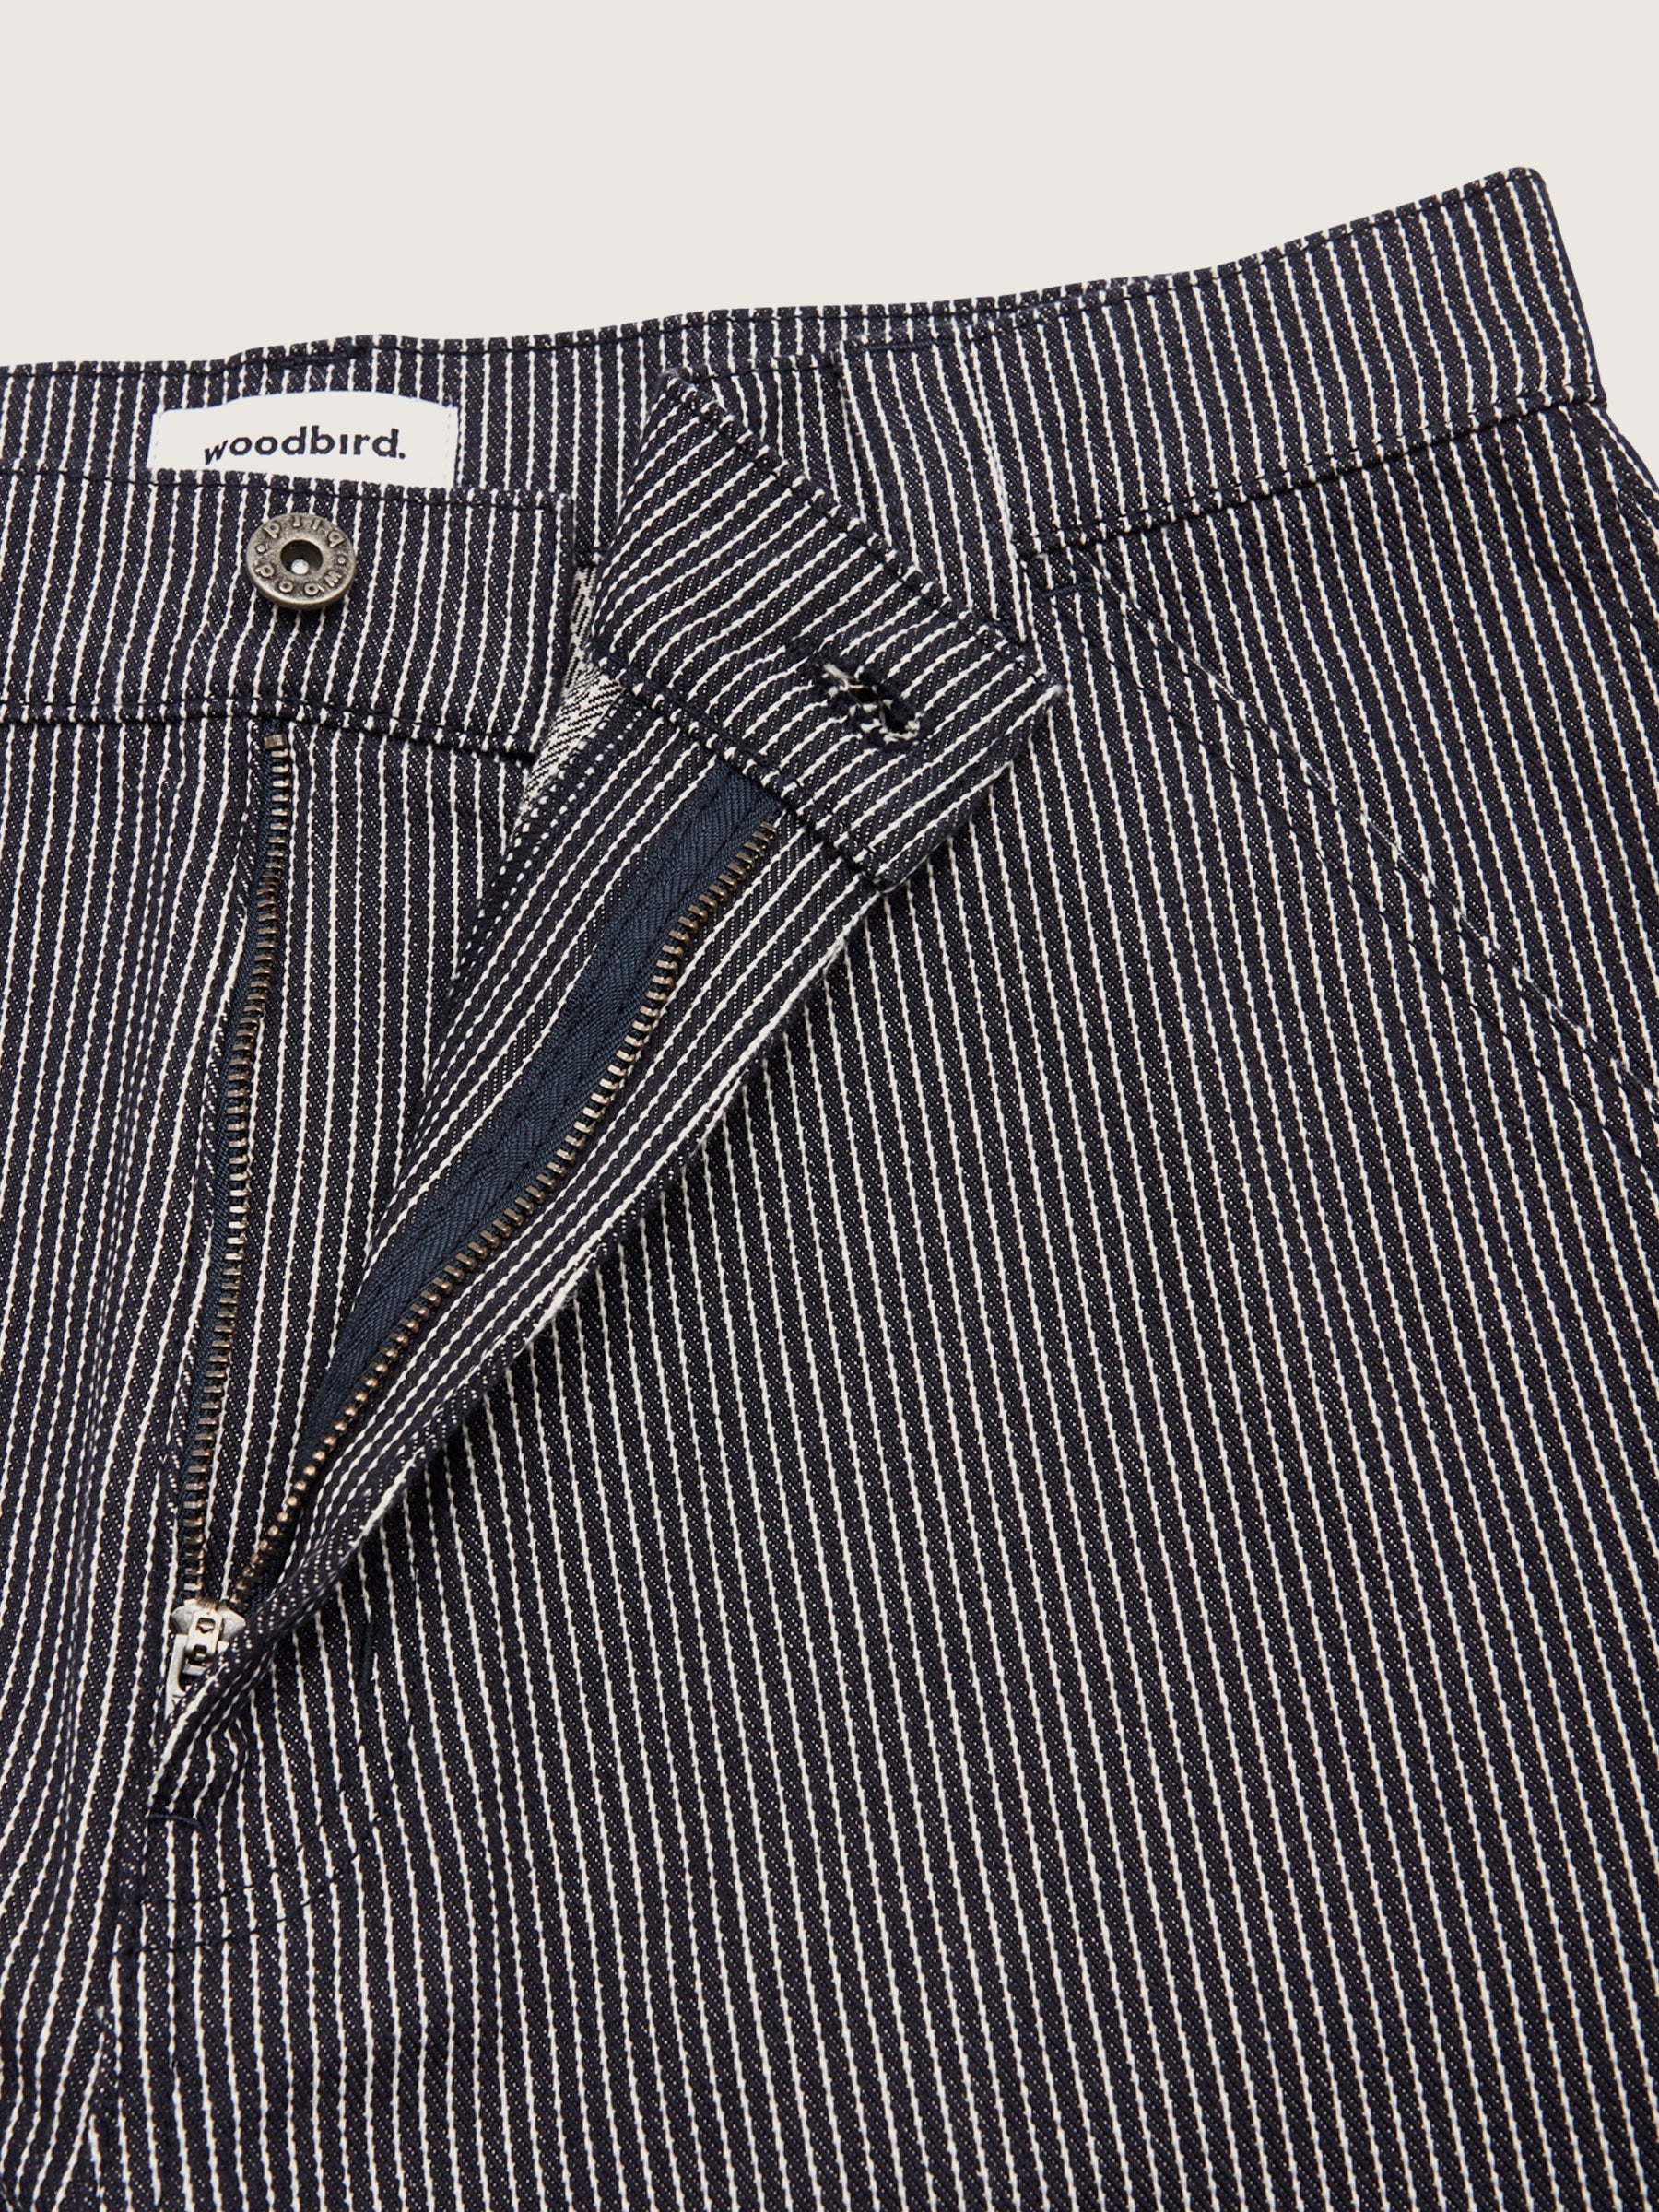 Buy Men Black  White Slim Fit Striped Regular Trousers online  Looksgudin